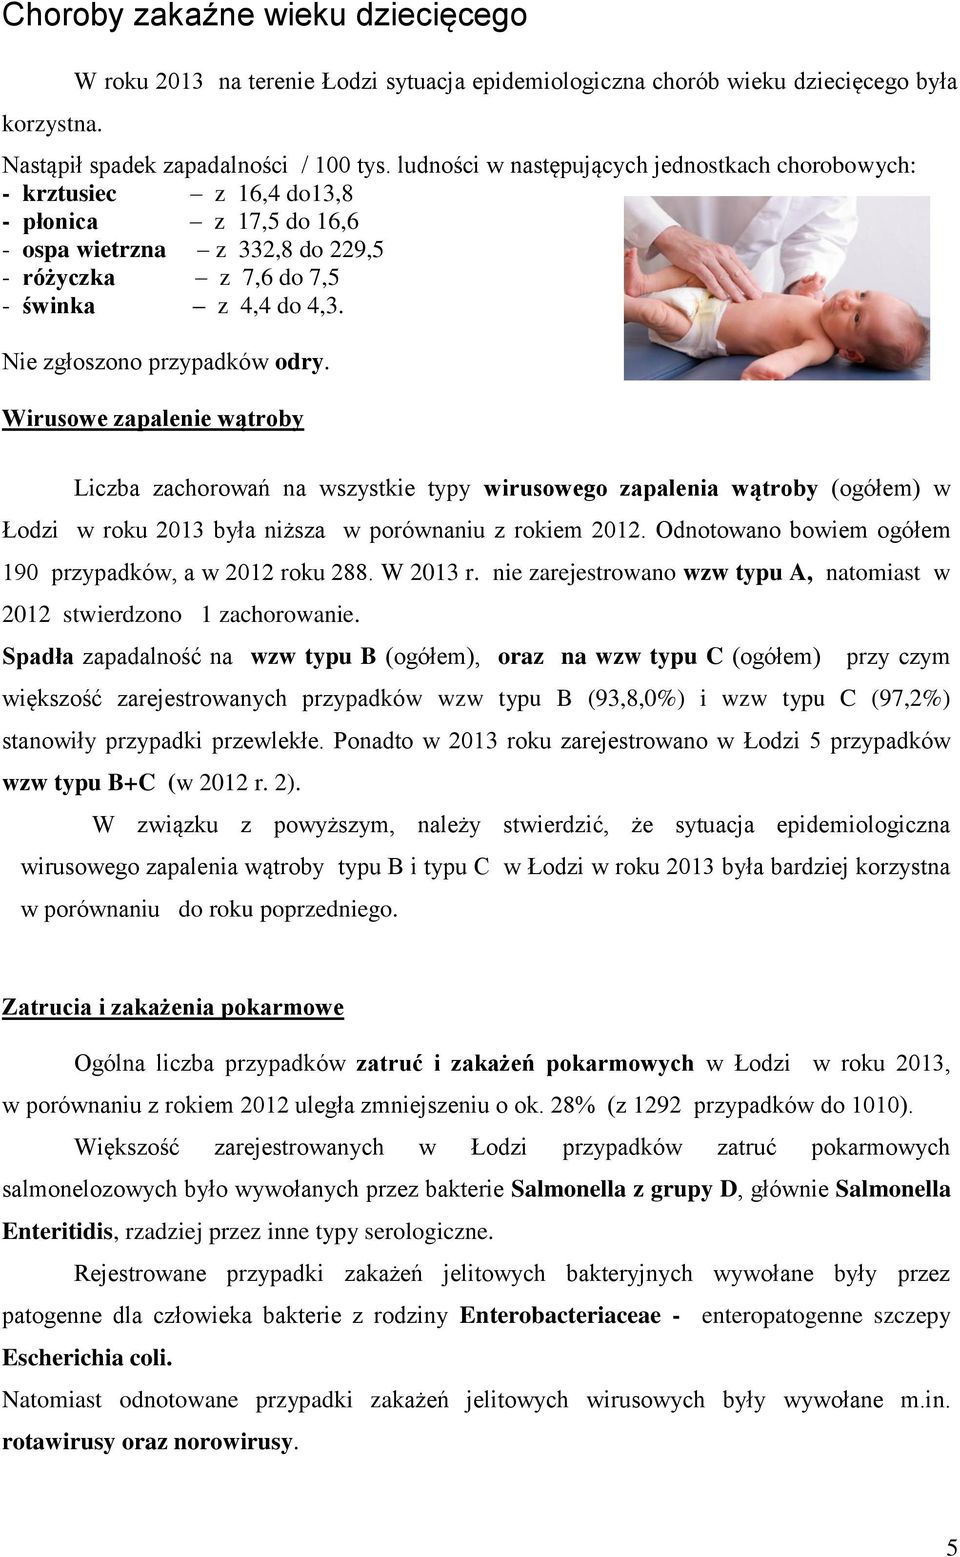 Nie zgłoszono przypadków odry. Wirusowe zapalenie wątroby Liczba zachorowań na wszystkie typy wirusowego zapalenia wątroby (ogółem) w Łodzi w roku 2013 była niższa w porównaniu z rokiem 2012.